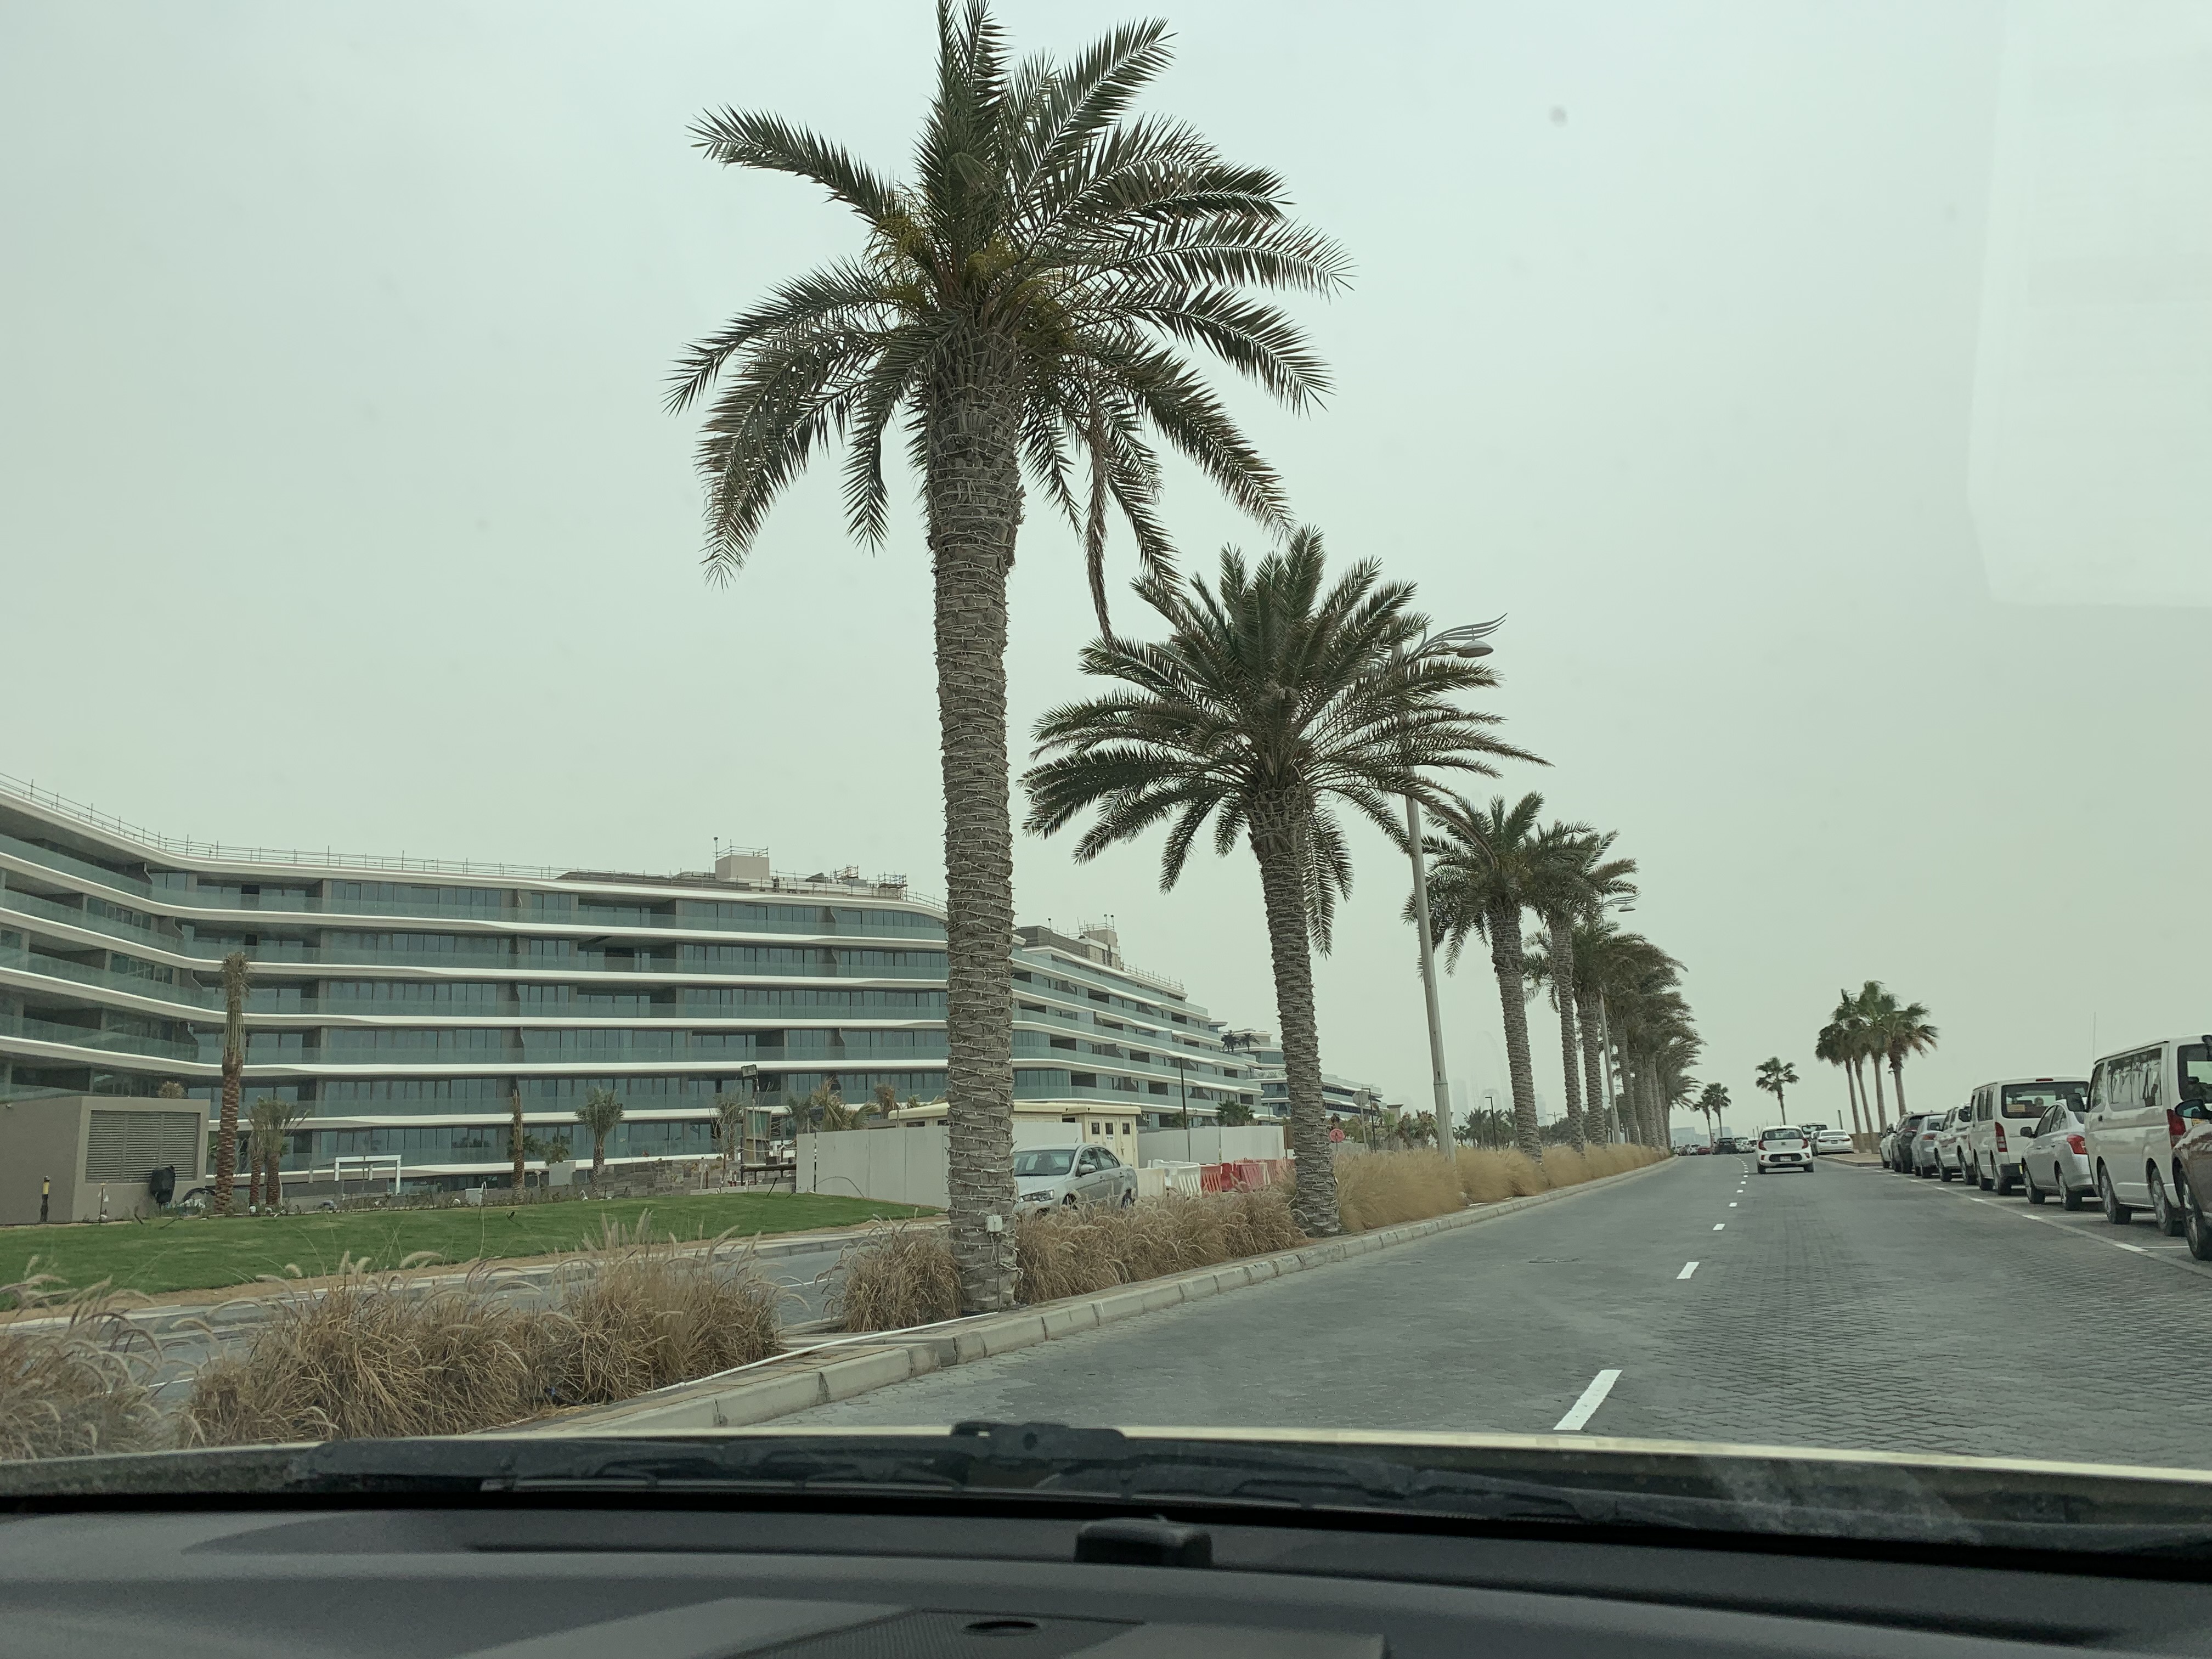 ϰWƵ-鵵
W Dubai-The Palm